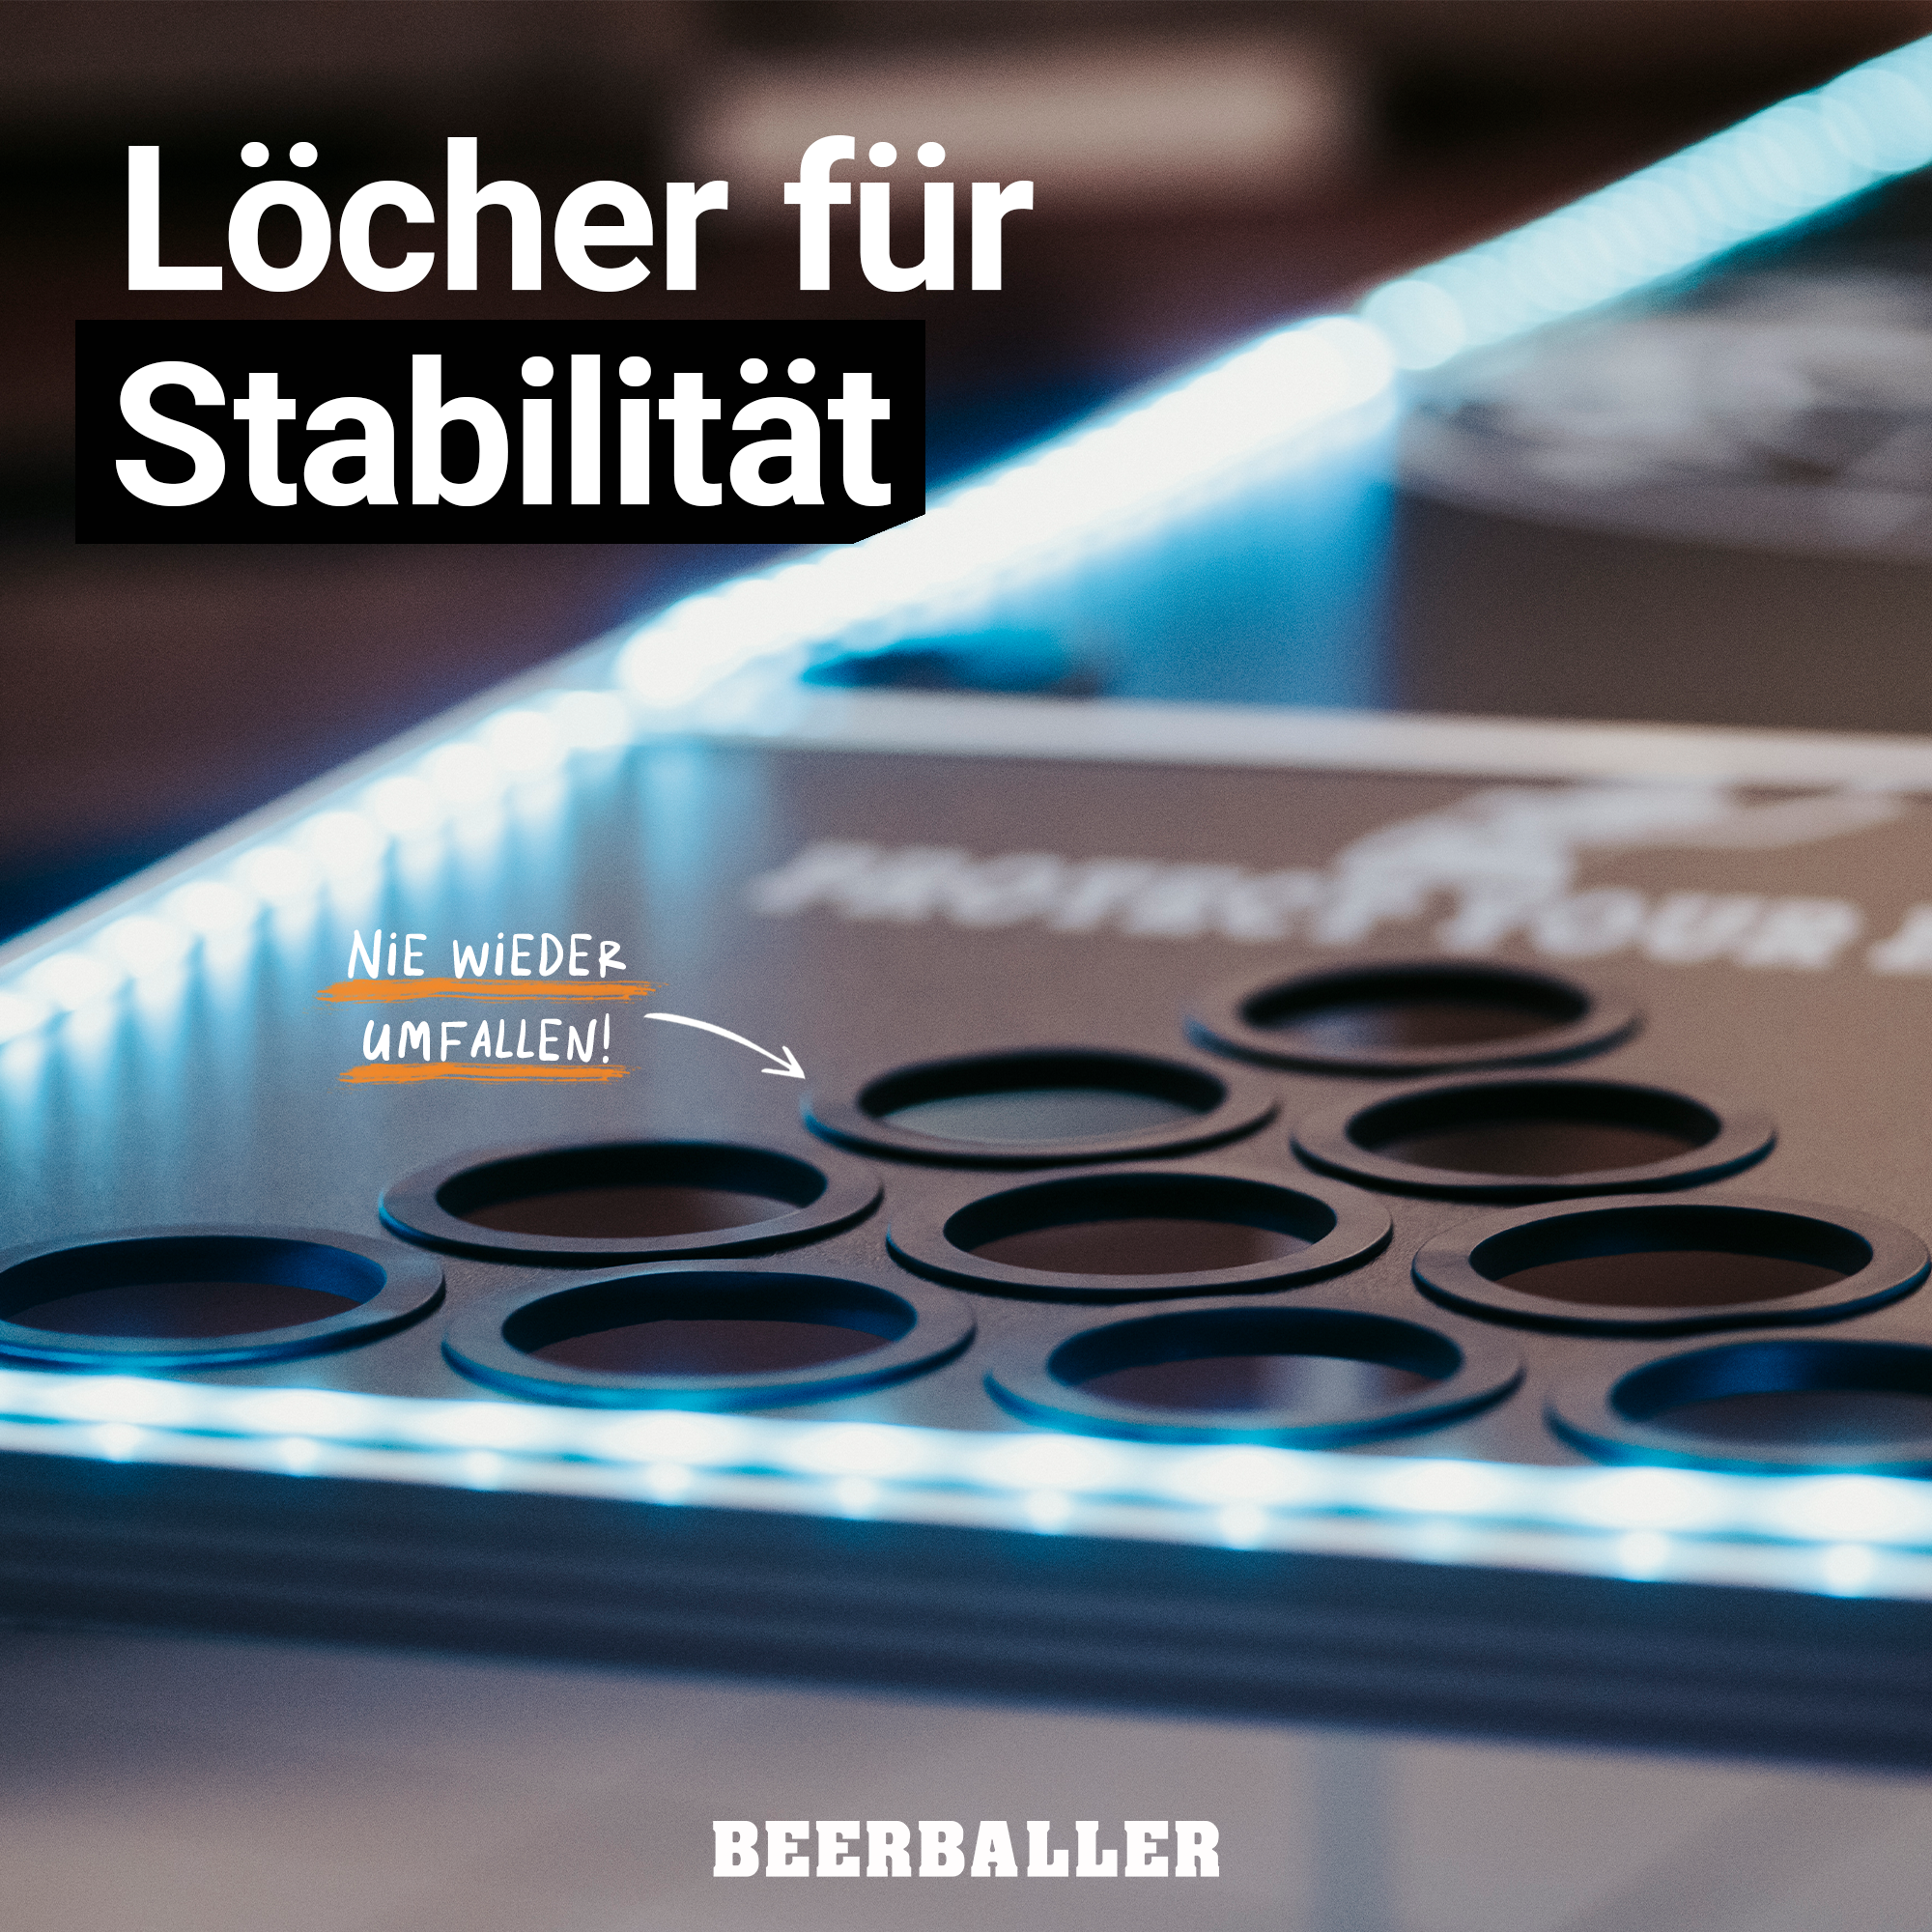 Offizieller Beer Pong Tisch - mit LED Beleuchtung inkl. 120 Becher + 6 –  Biermode